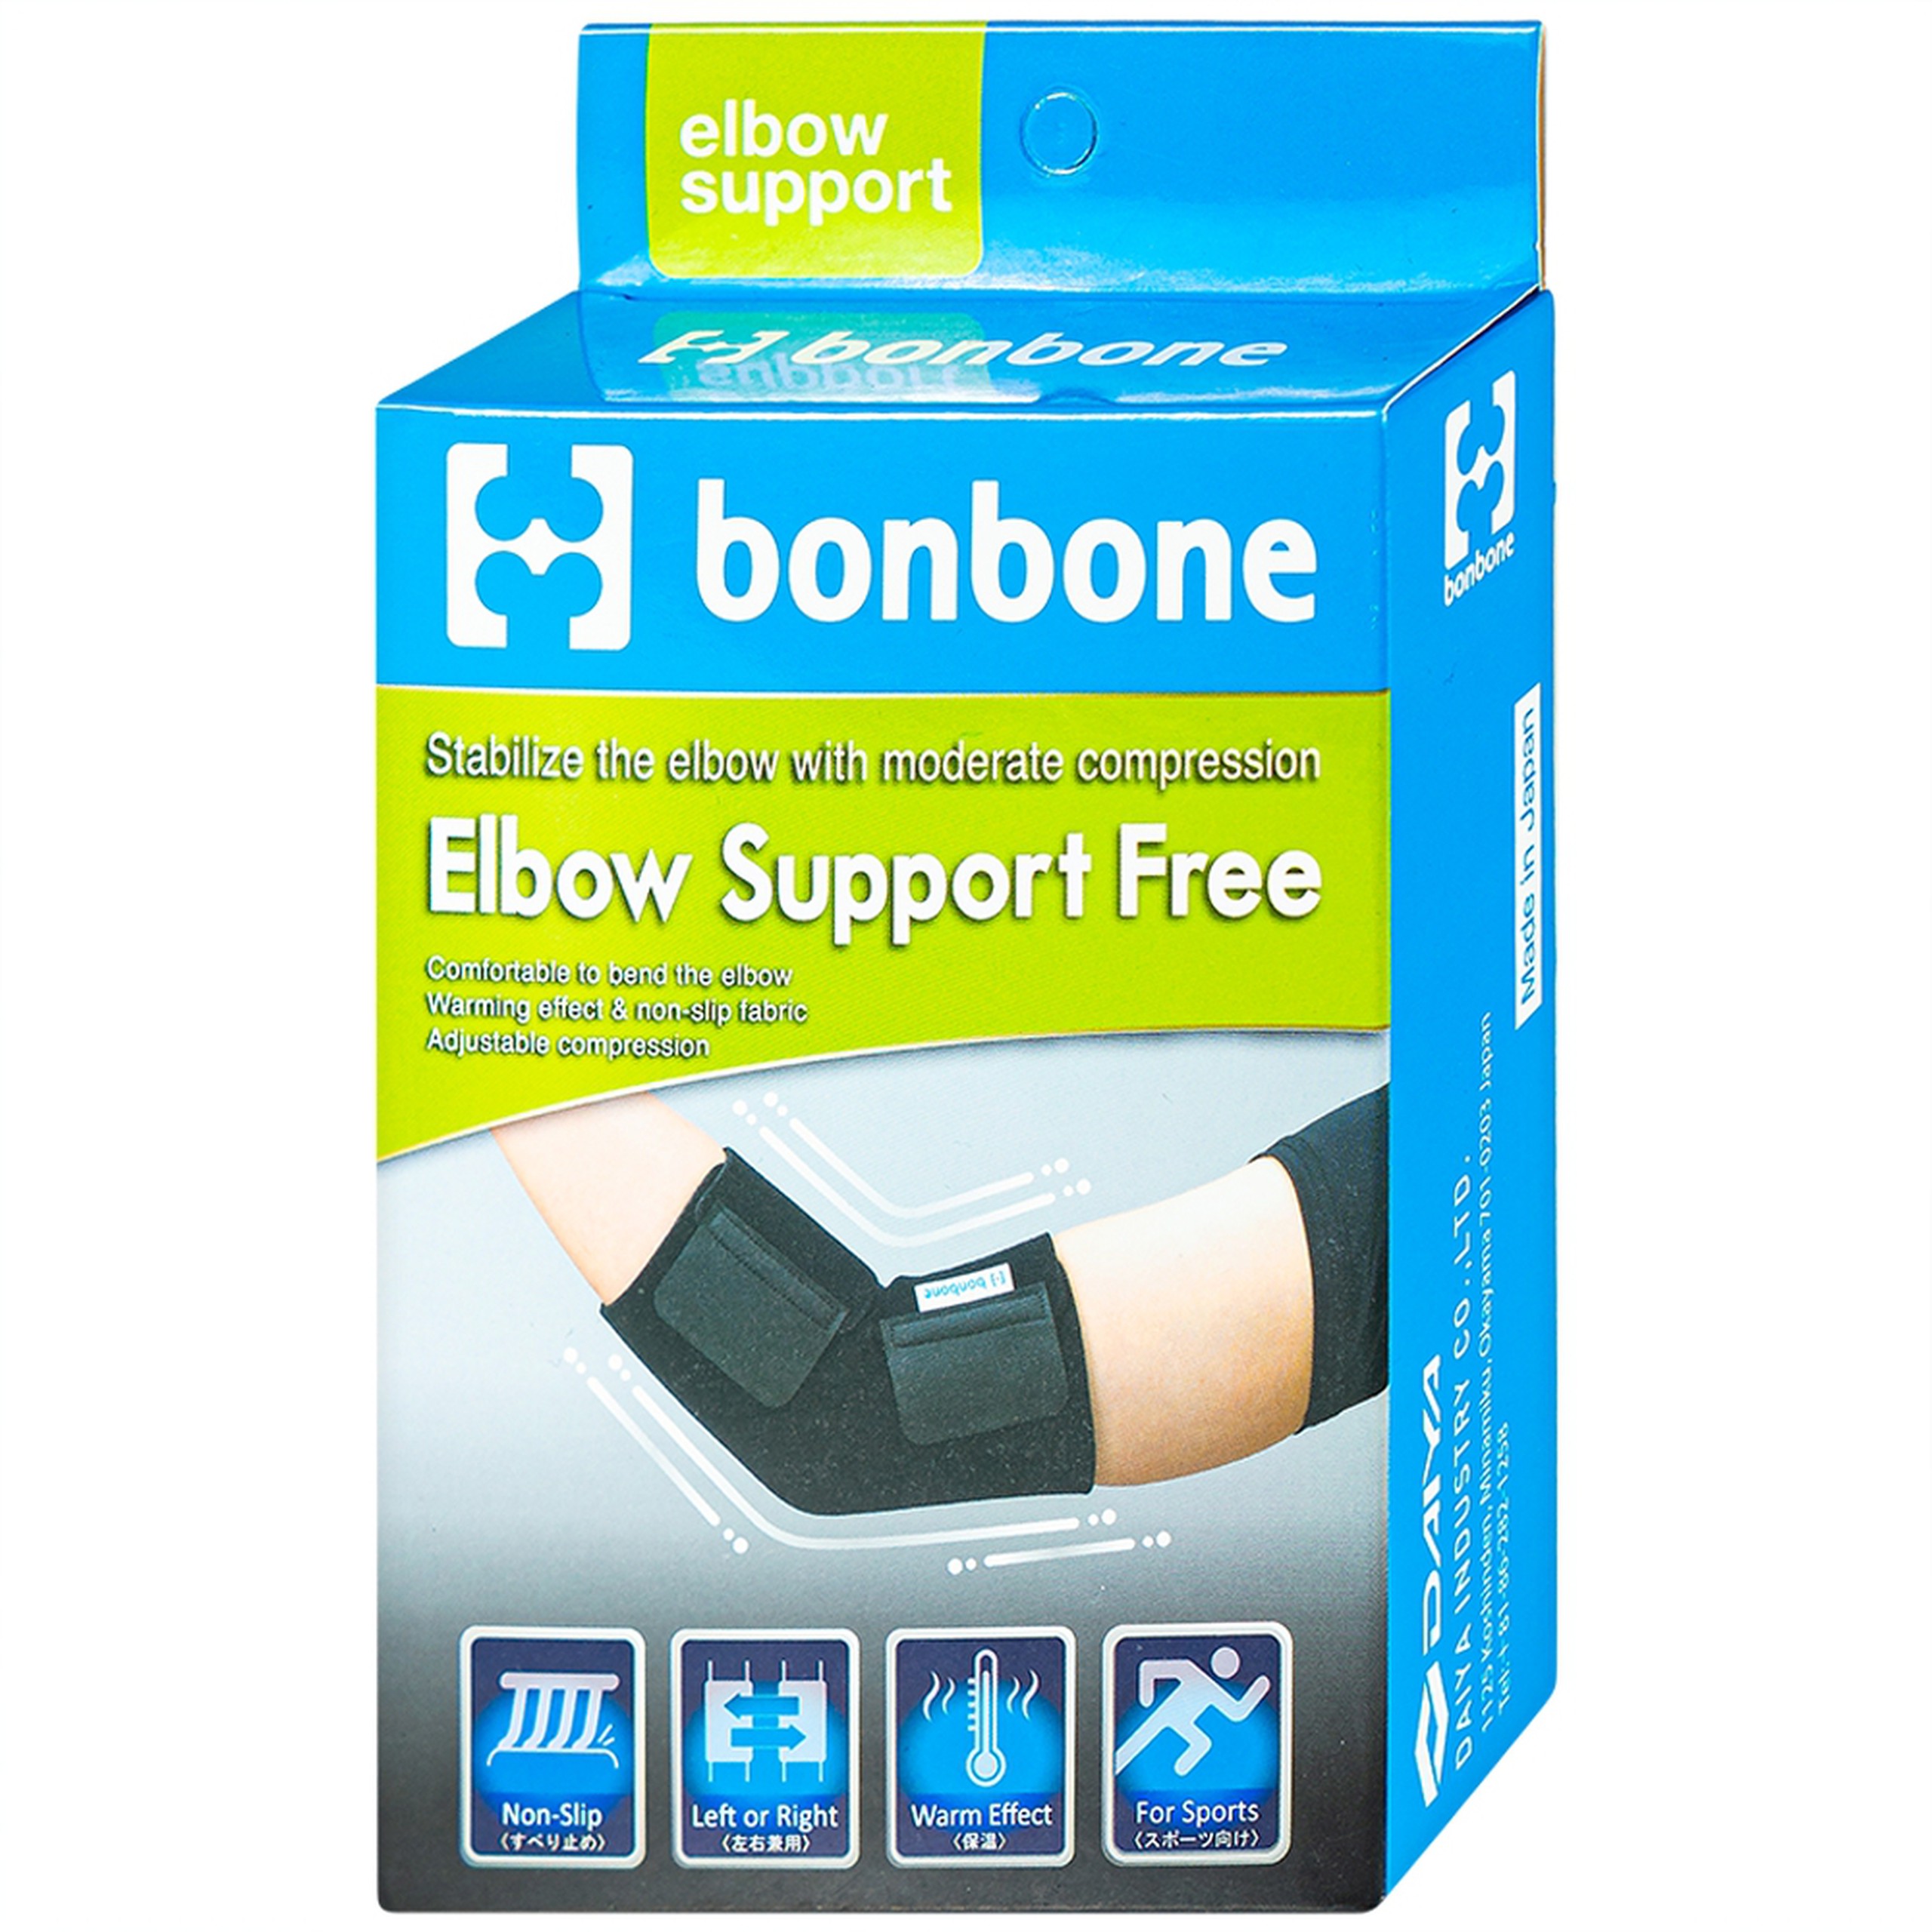 Đai nẹp khuỷu tay Bonbone Elbow Support Free trợ lực cho khuỷu tay khi bị chấn thương